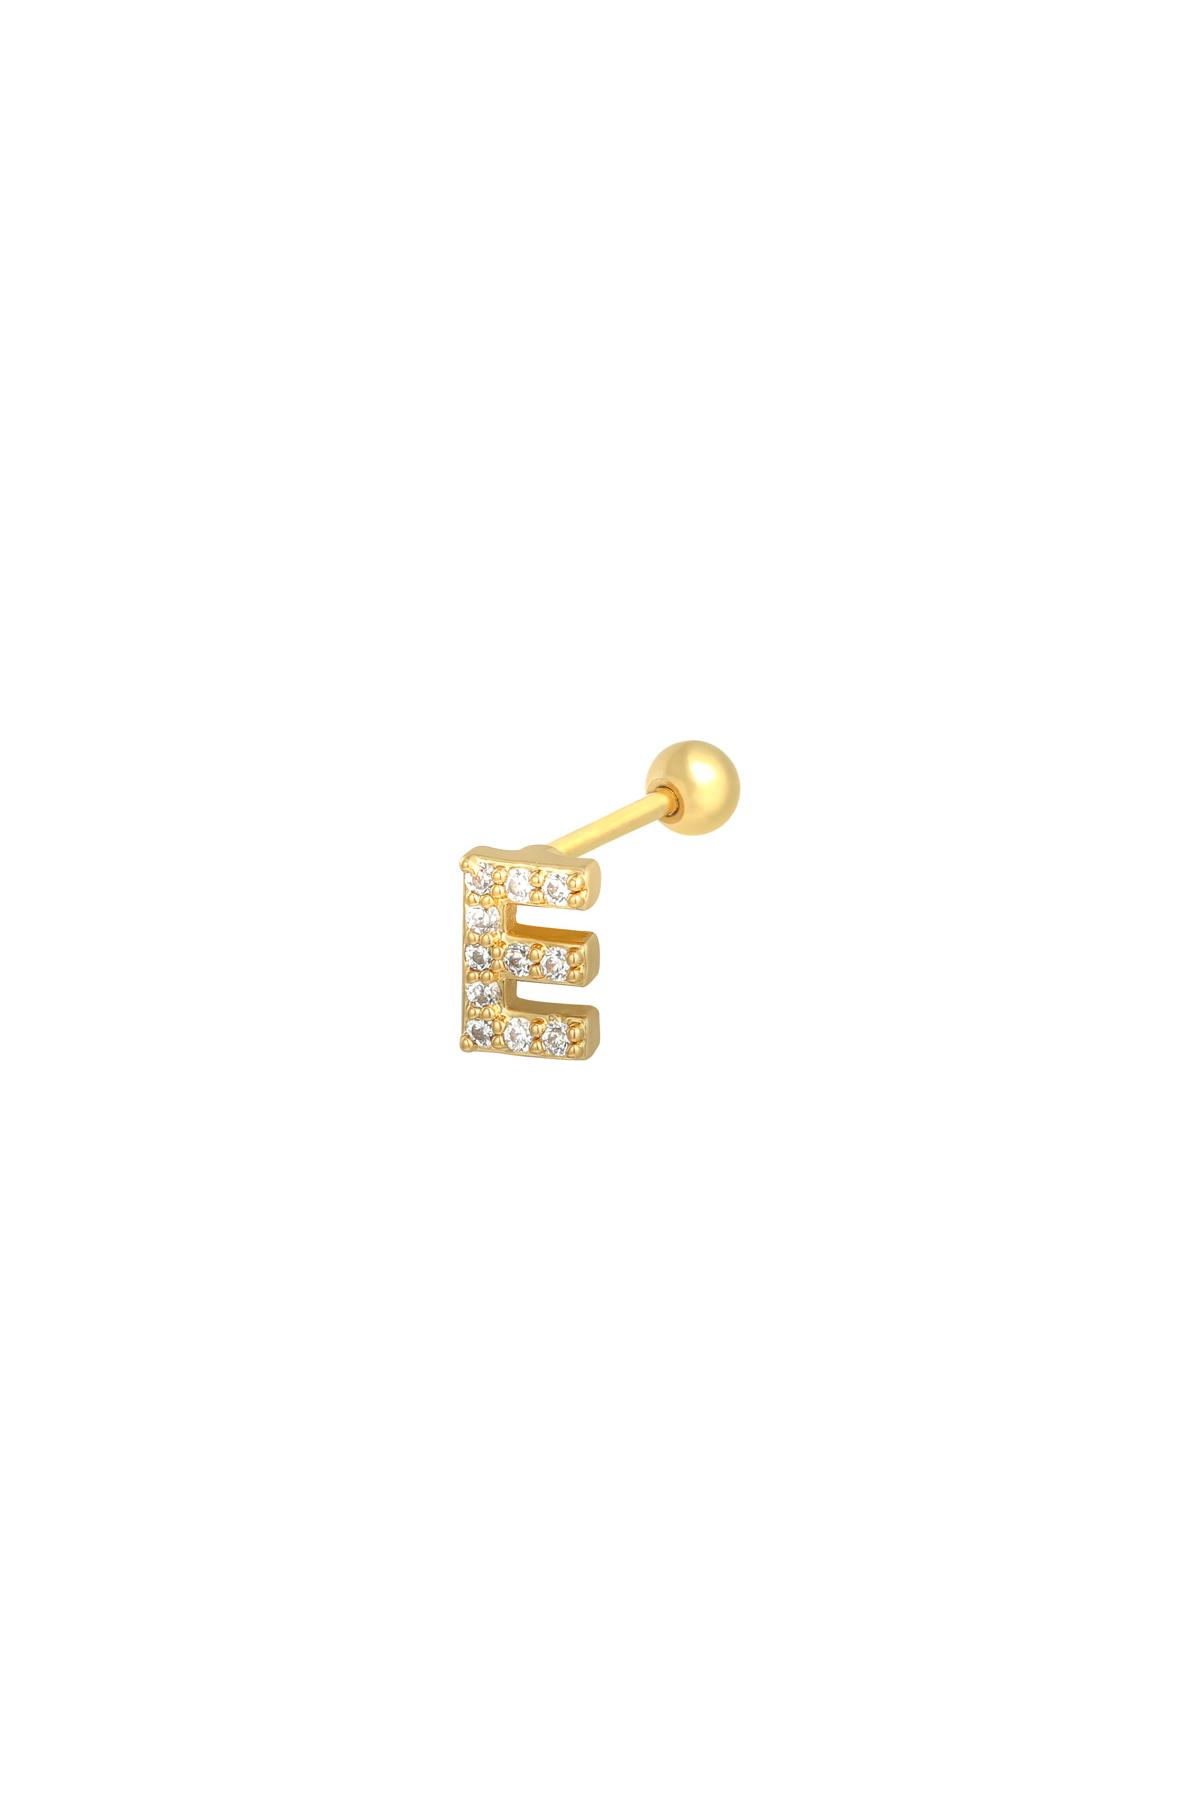 Gold / Piercing E Gold Kupfer,Edelstahl Bild27